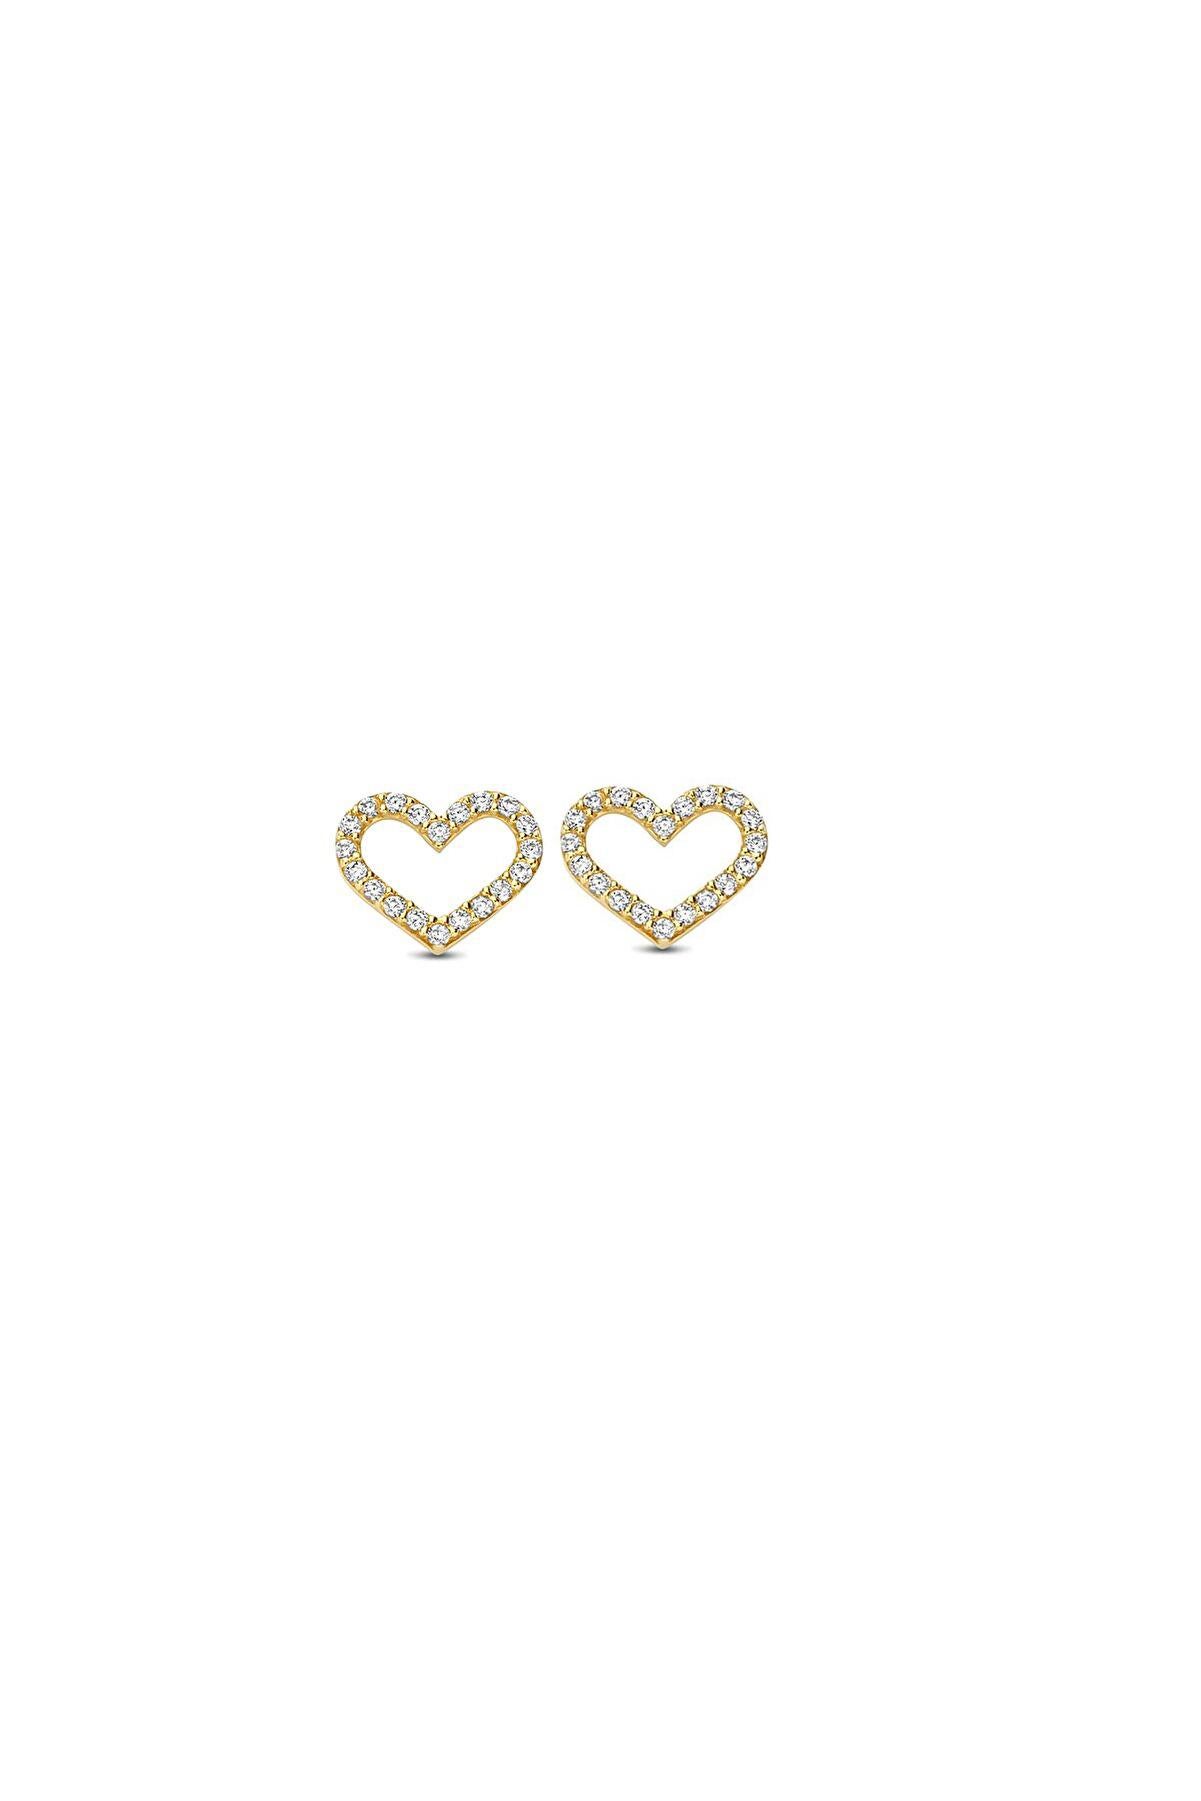 Modern Heart Earrings Studs in 14k Yellow Gold, Mini Heart-Shaped Stud Earrings For Sale